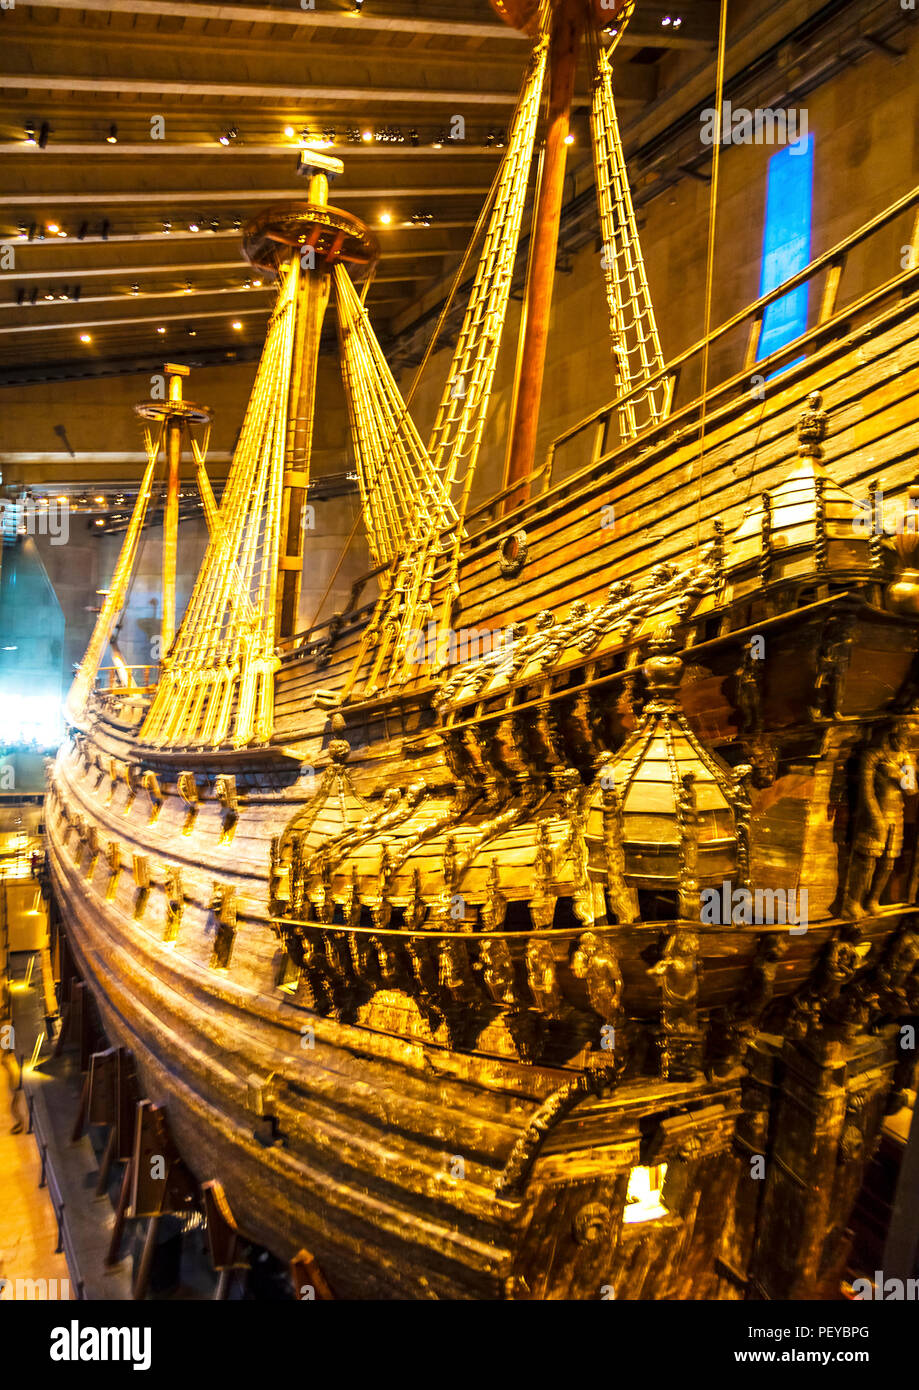 La VASA, un buque de guerra de madera que se hundió en su maden voyage en  1628 en el puerto de Estocolmo Fotografía de stock - Alamy